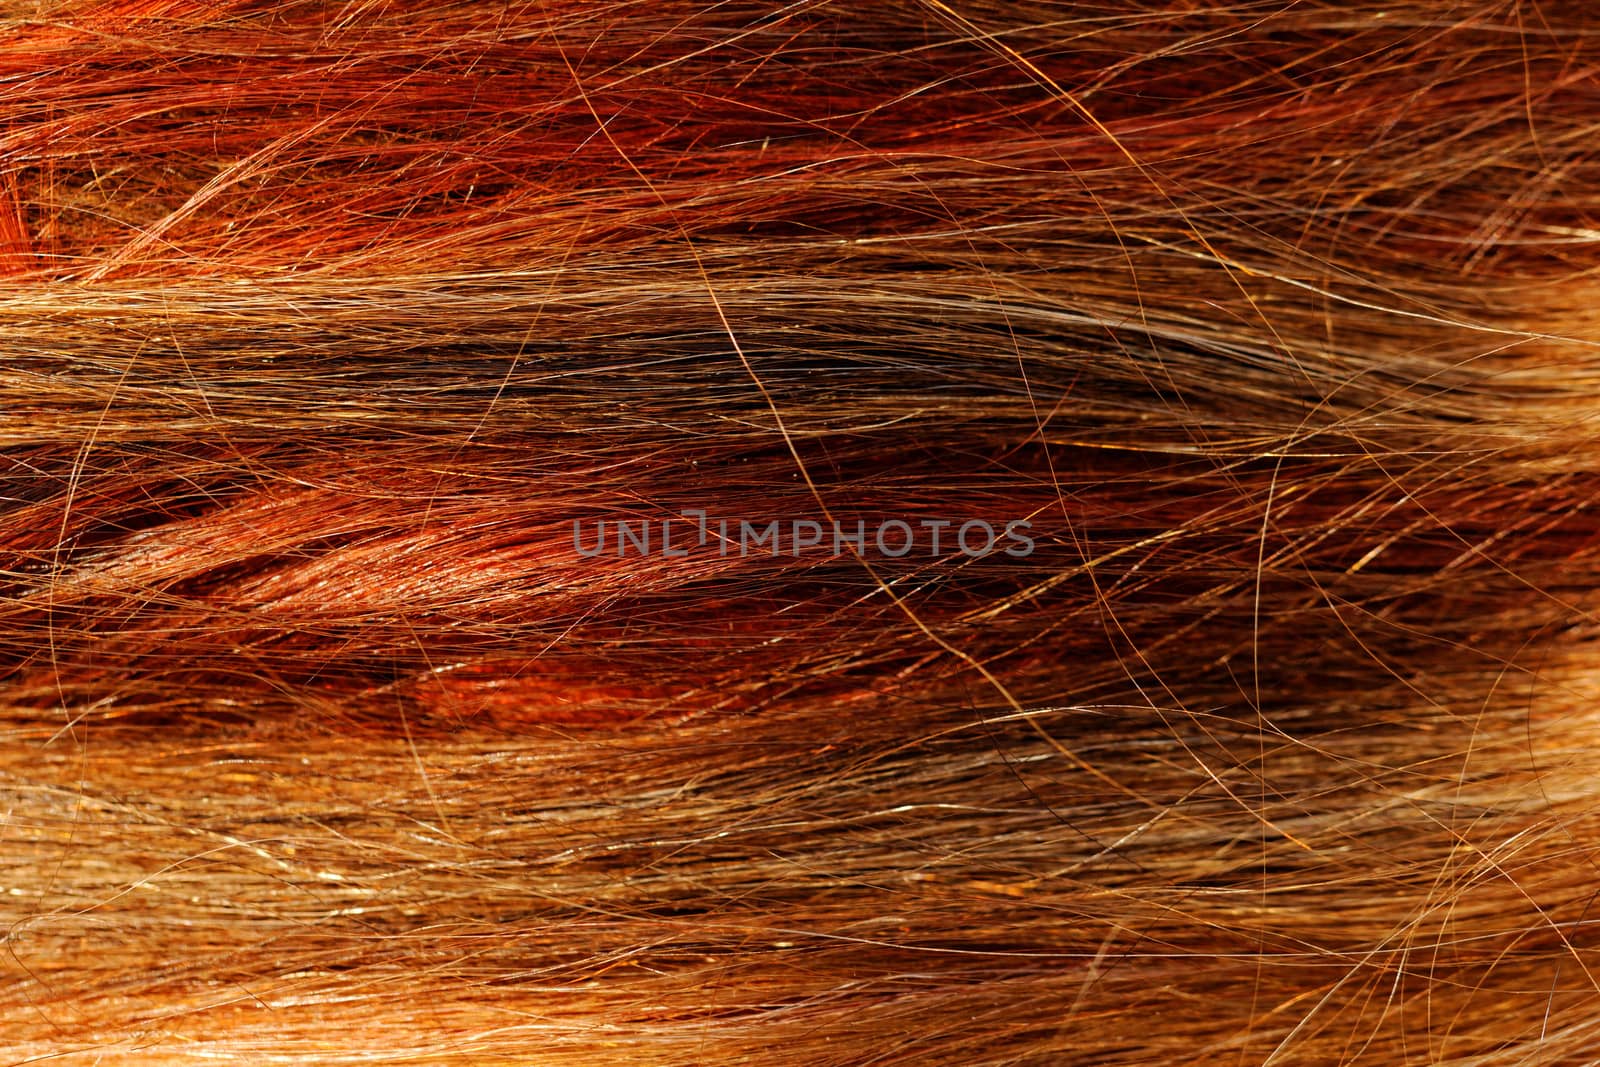 hair texture by NagyDodo